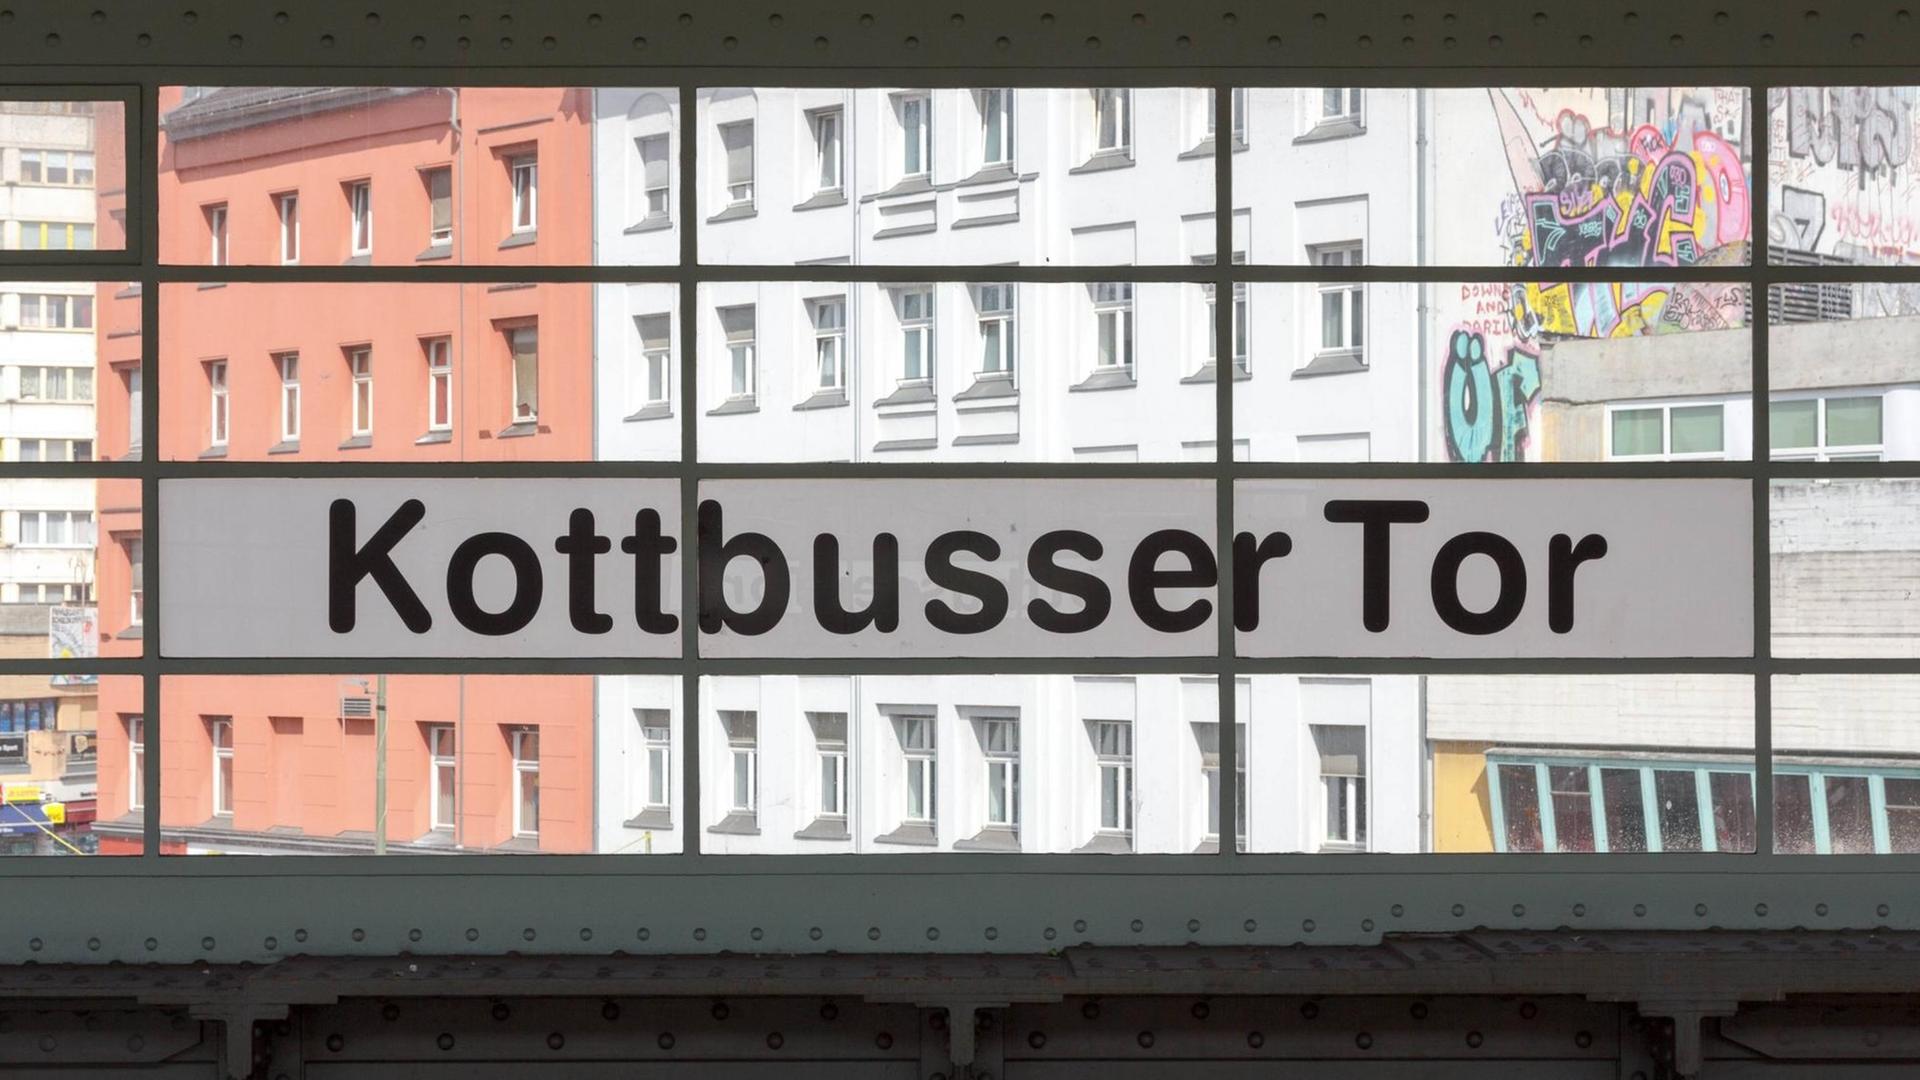 Das Foto zeigt den Bahnhof Kottbusser Tor - der Blick geht durch die Fenster des Bahnhofgebäudes nach draußen auf den Platz.